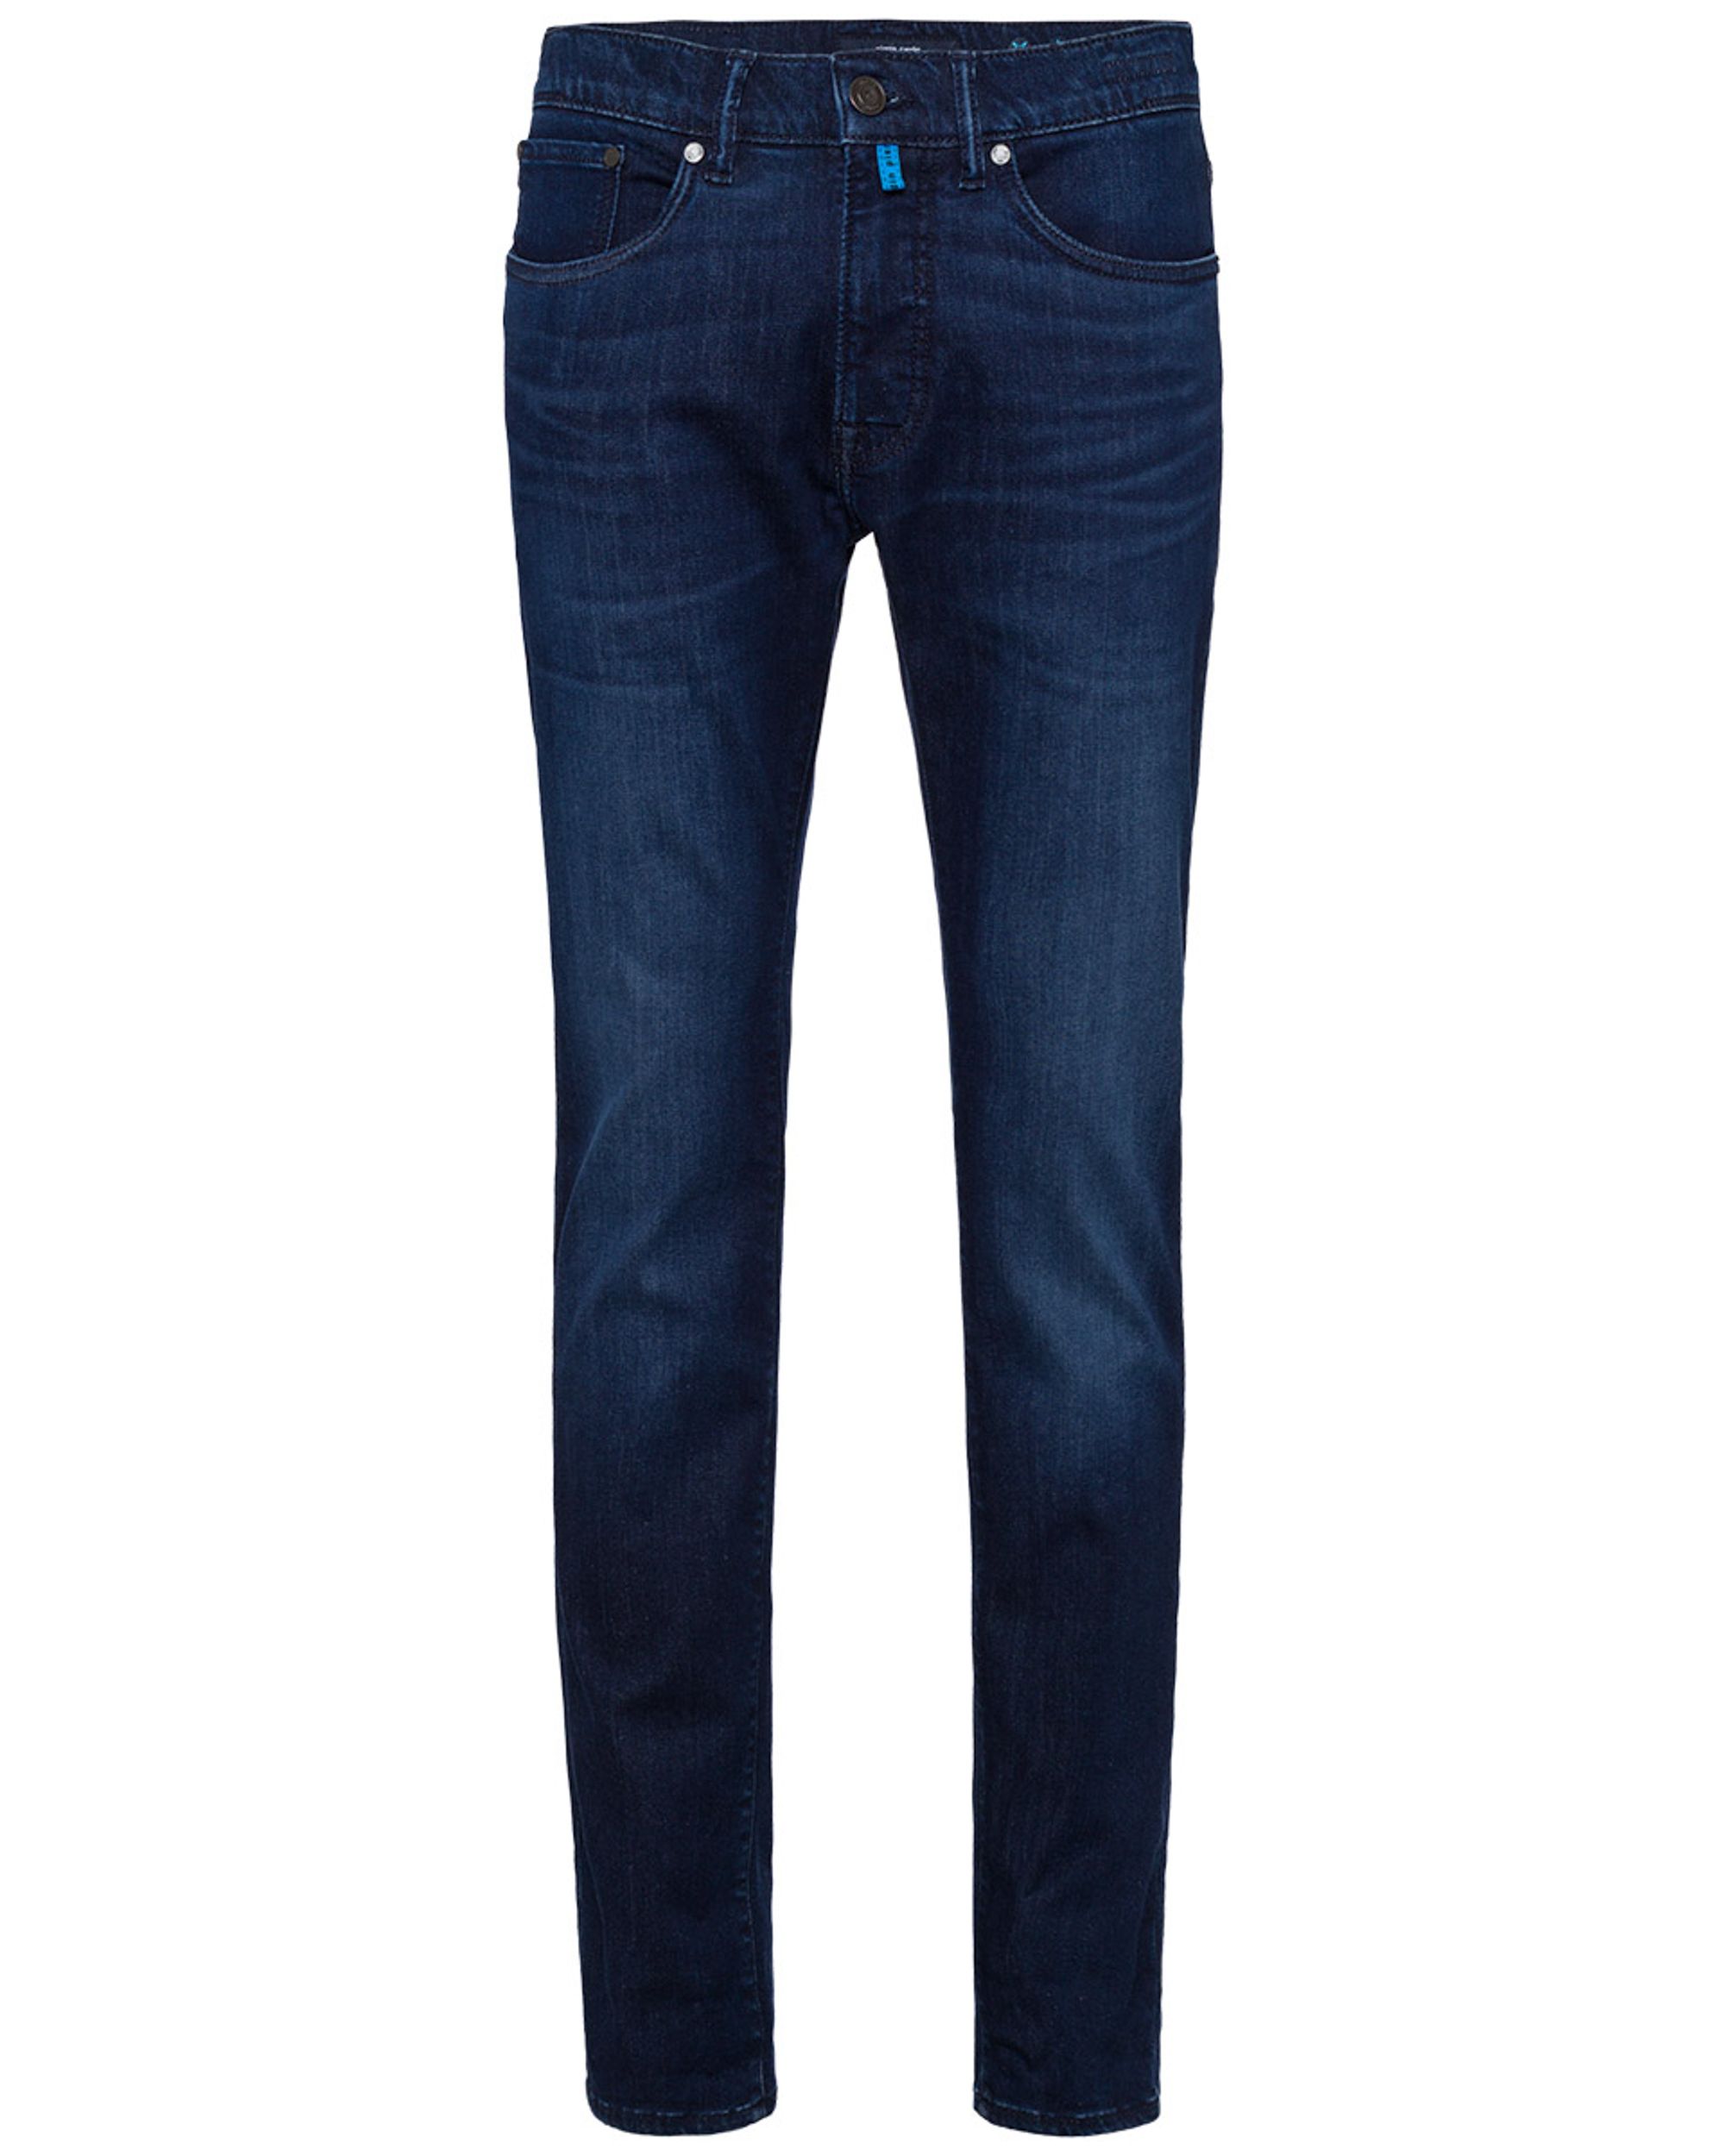 Pierre Cardin Jeans Blauw 082056-001-33/32